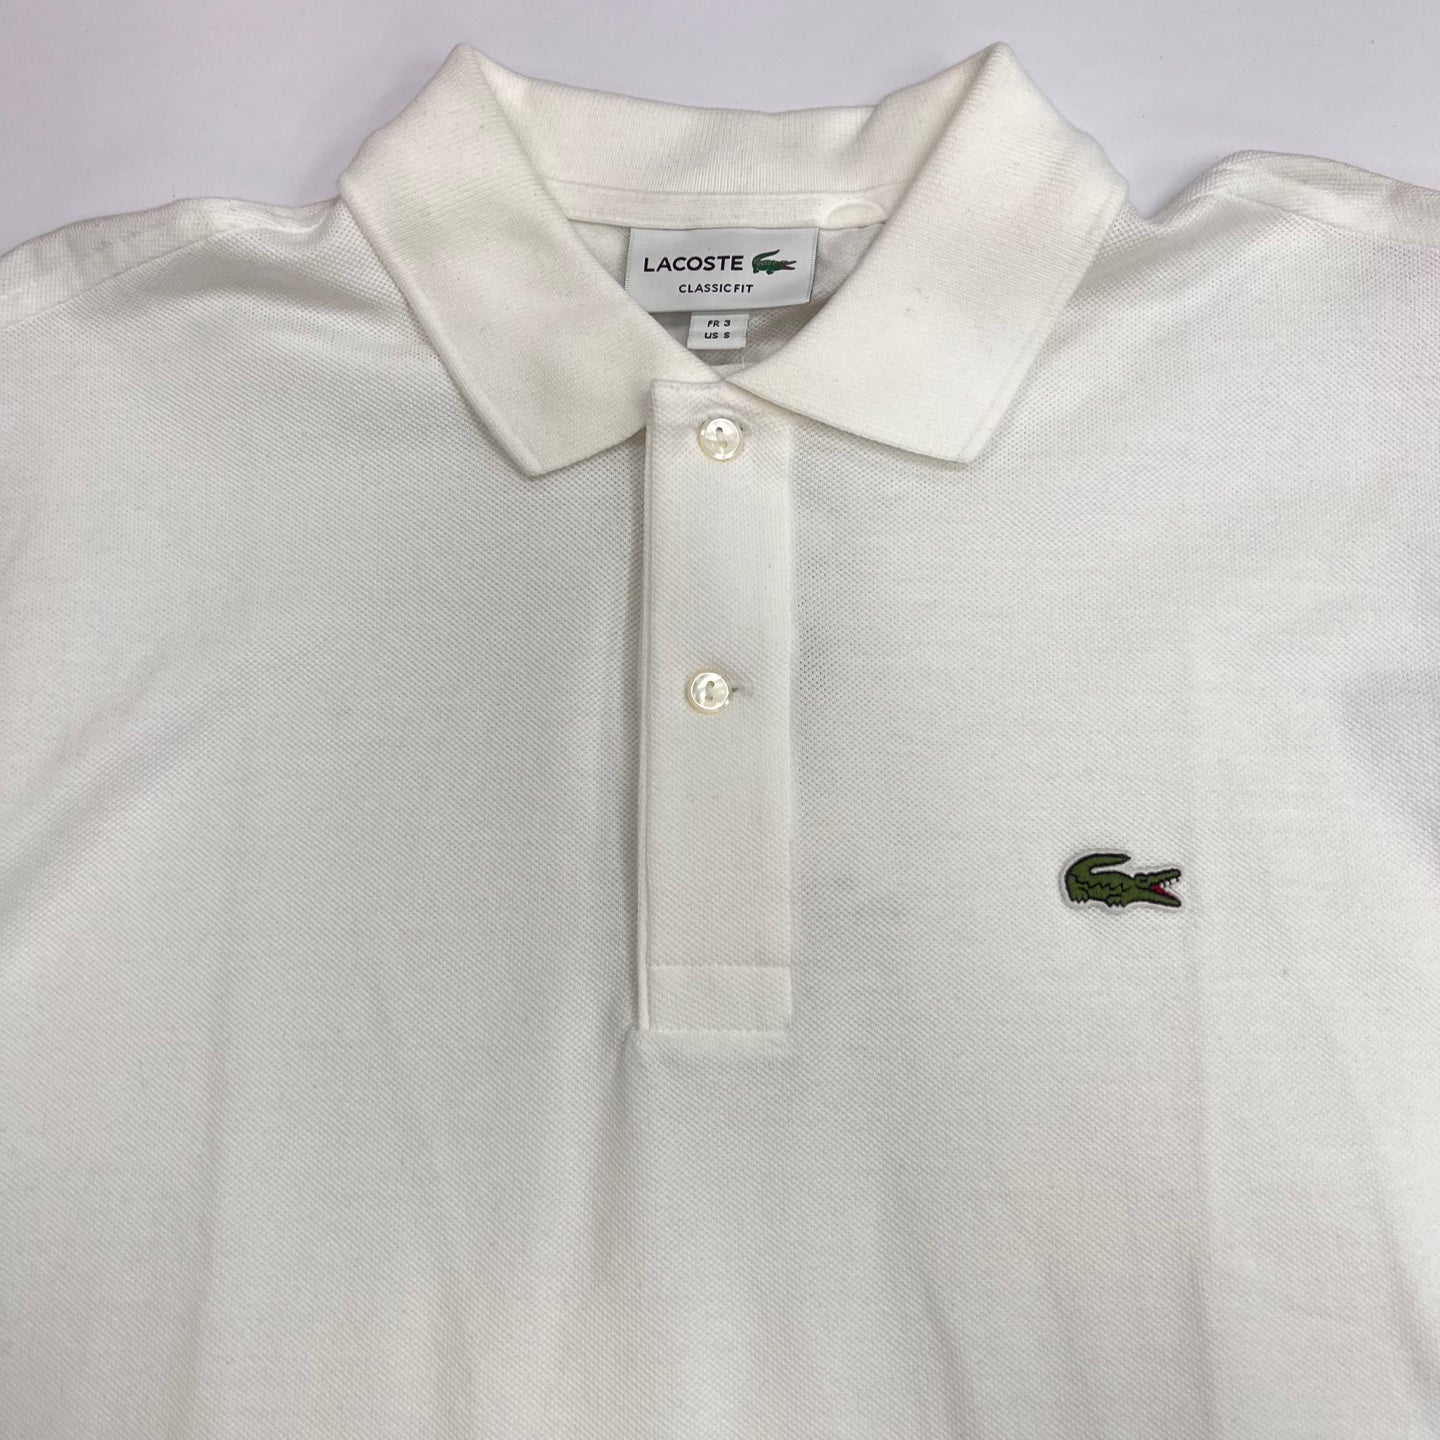 LACOSTE Original Petit Pique Cotton Polo Shirts